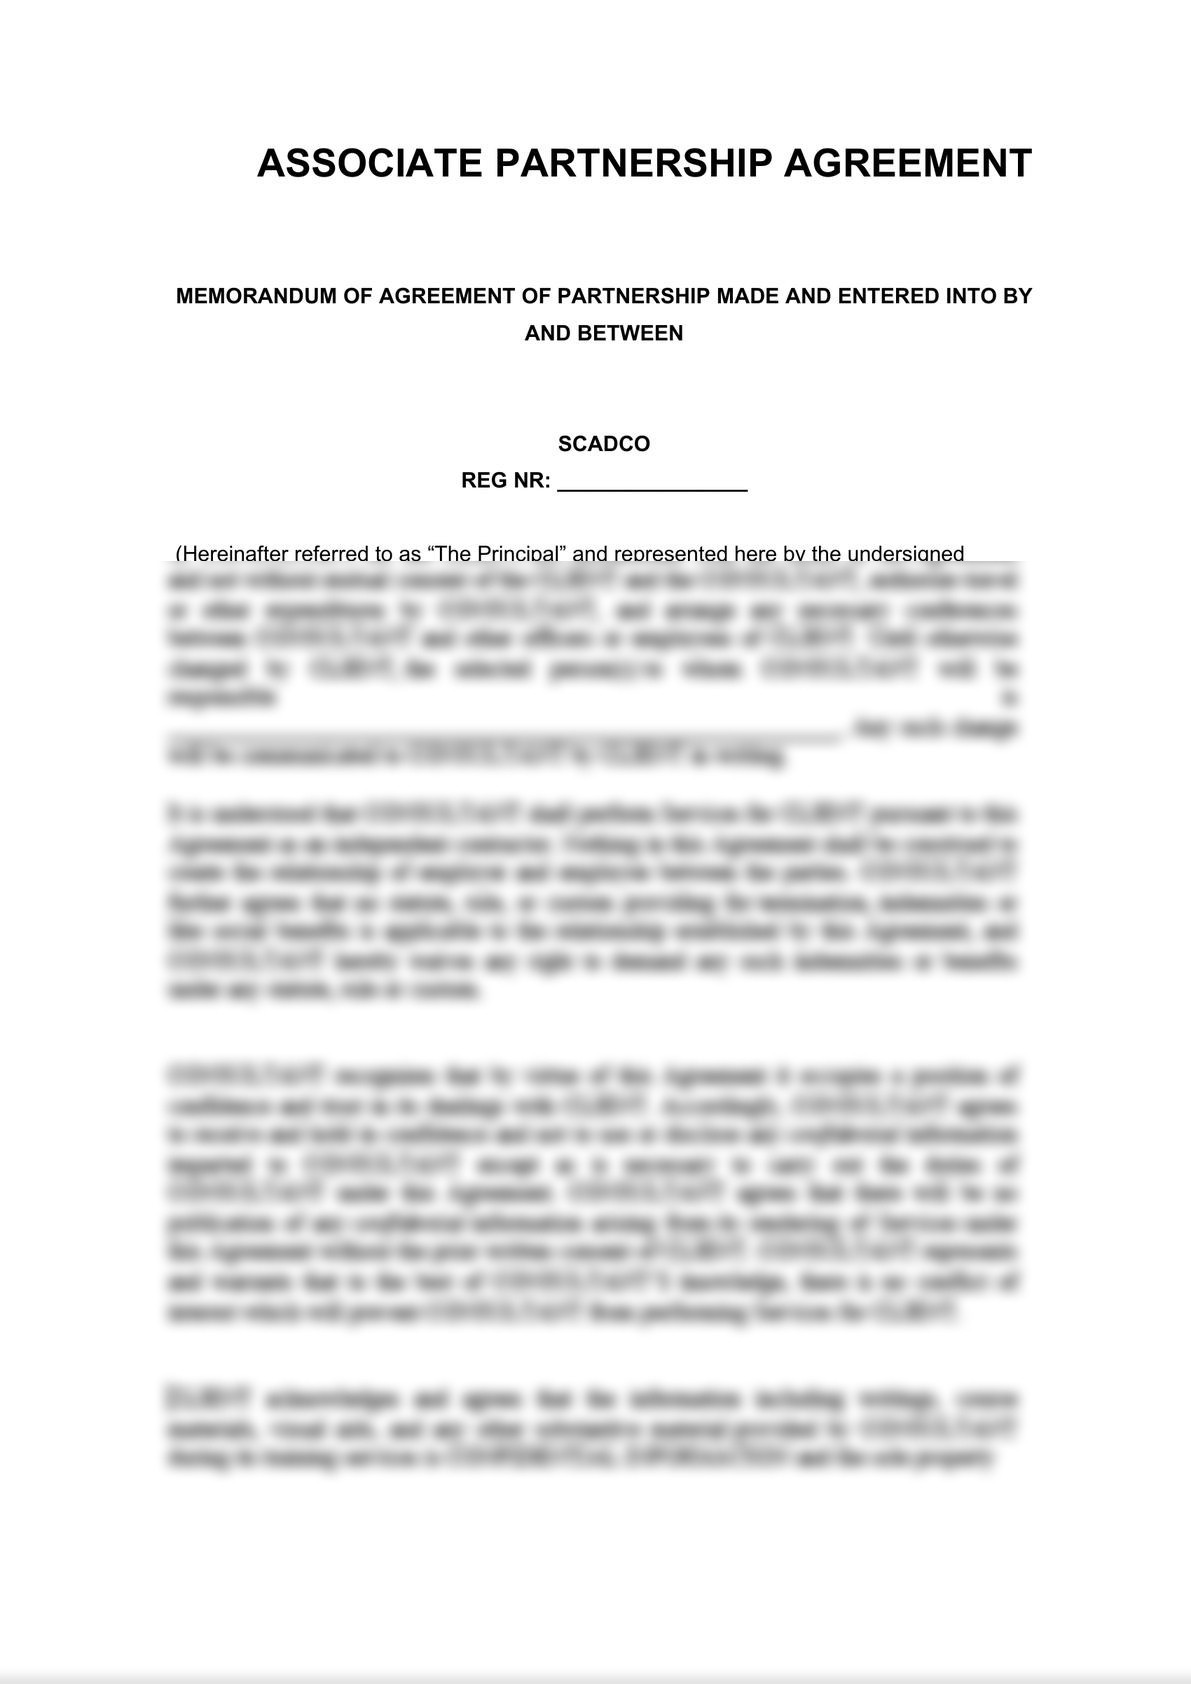 Partnership Agreement - Associate-0